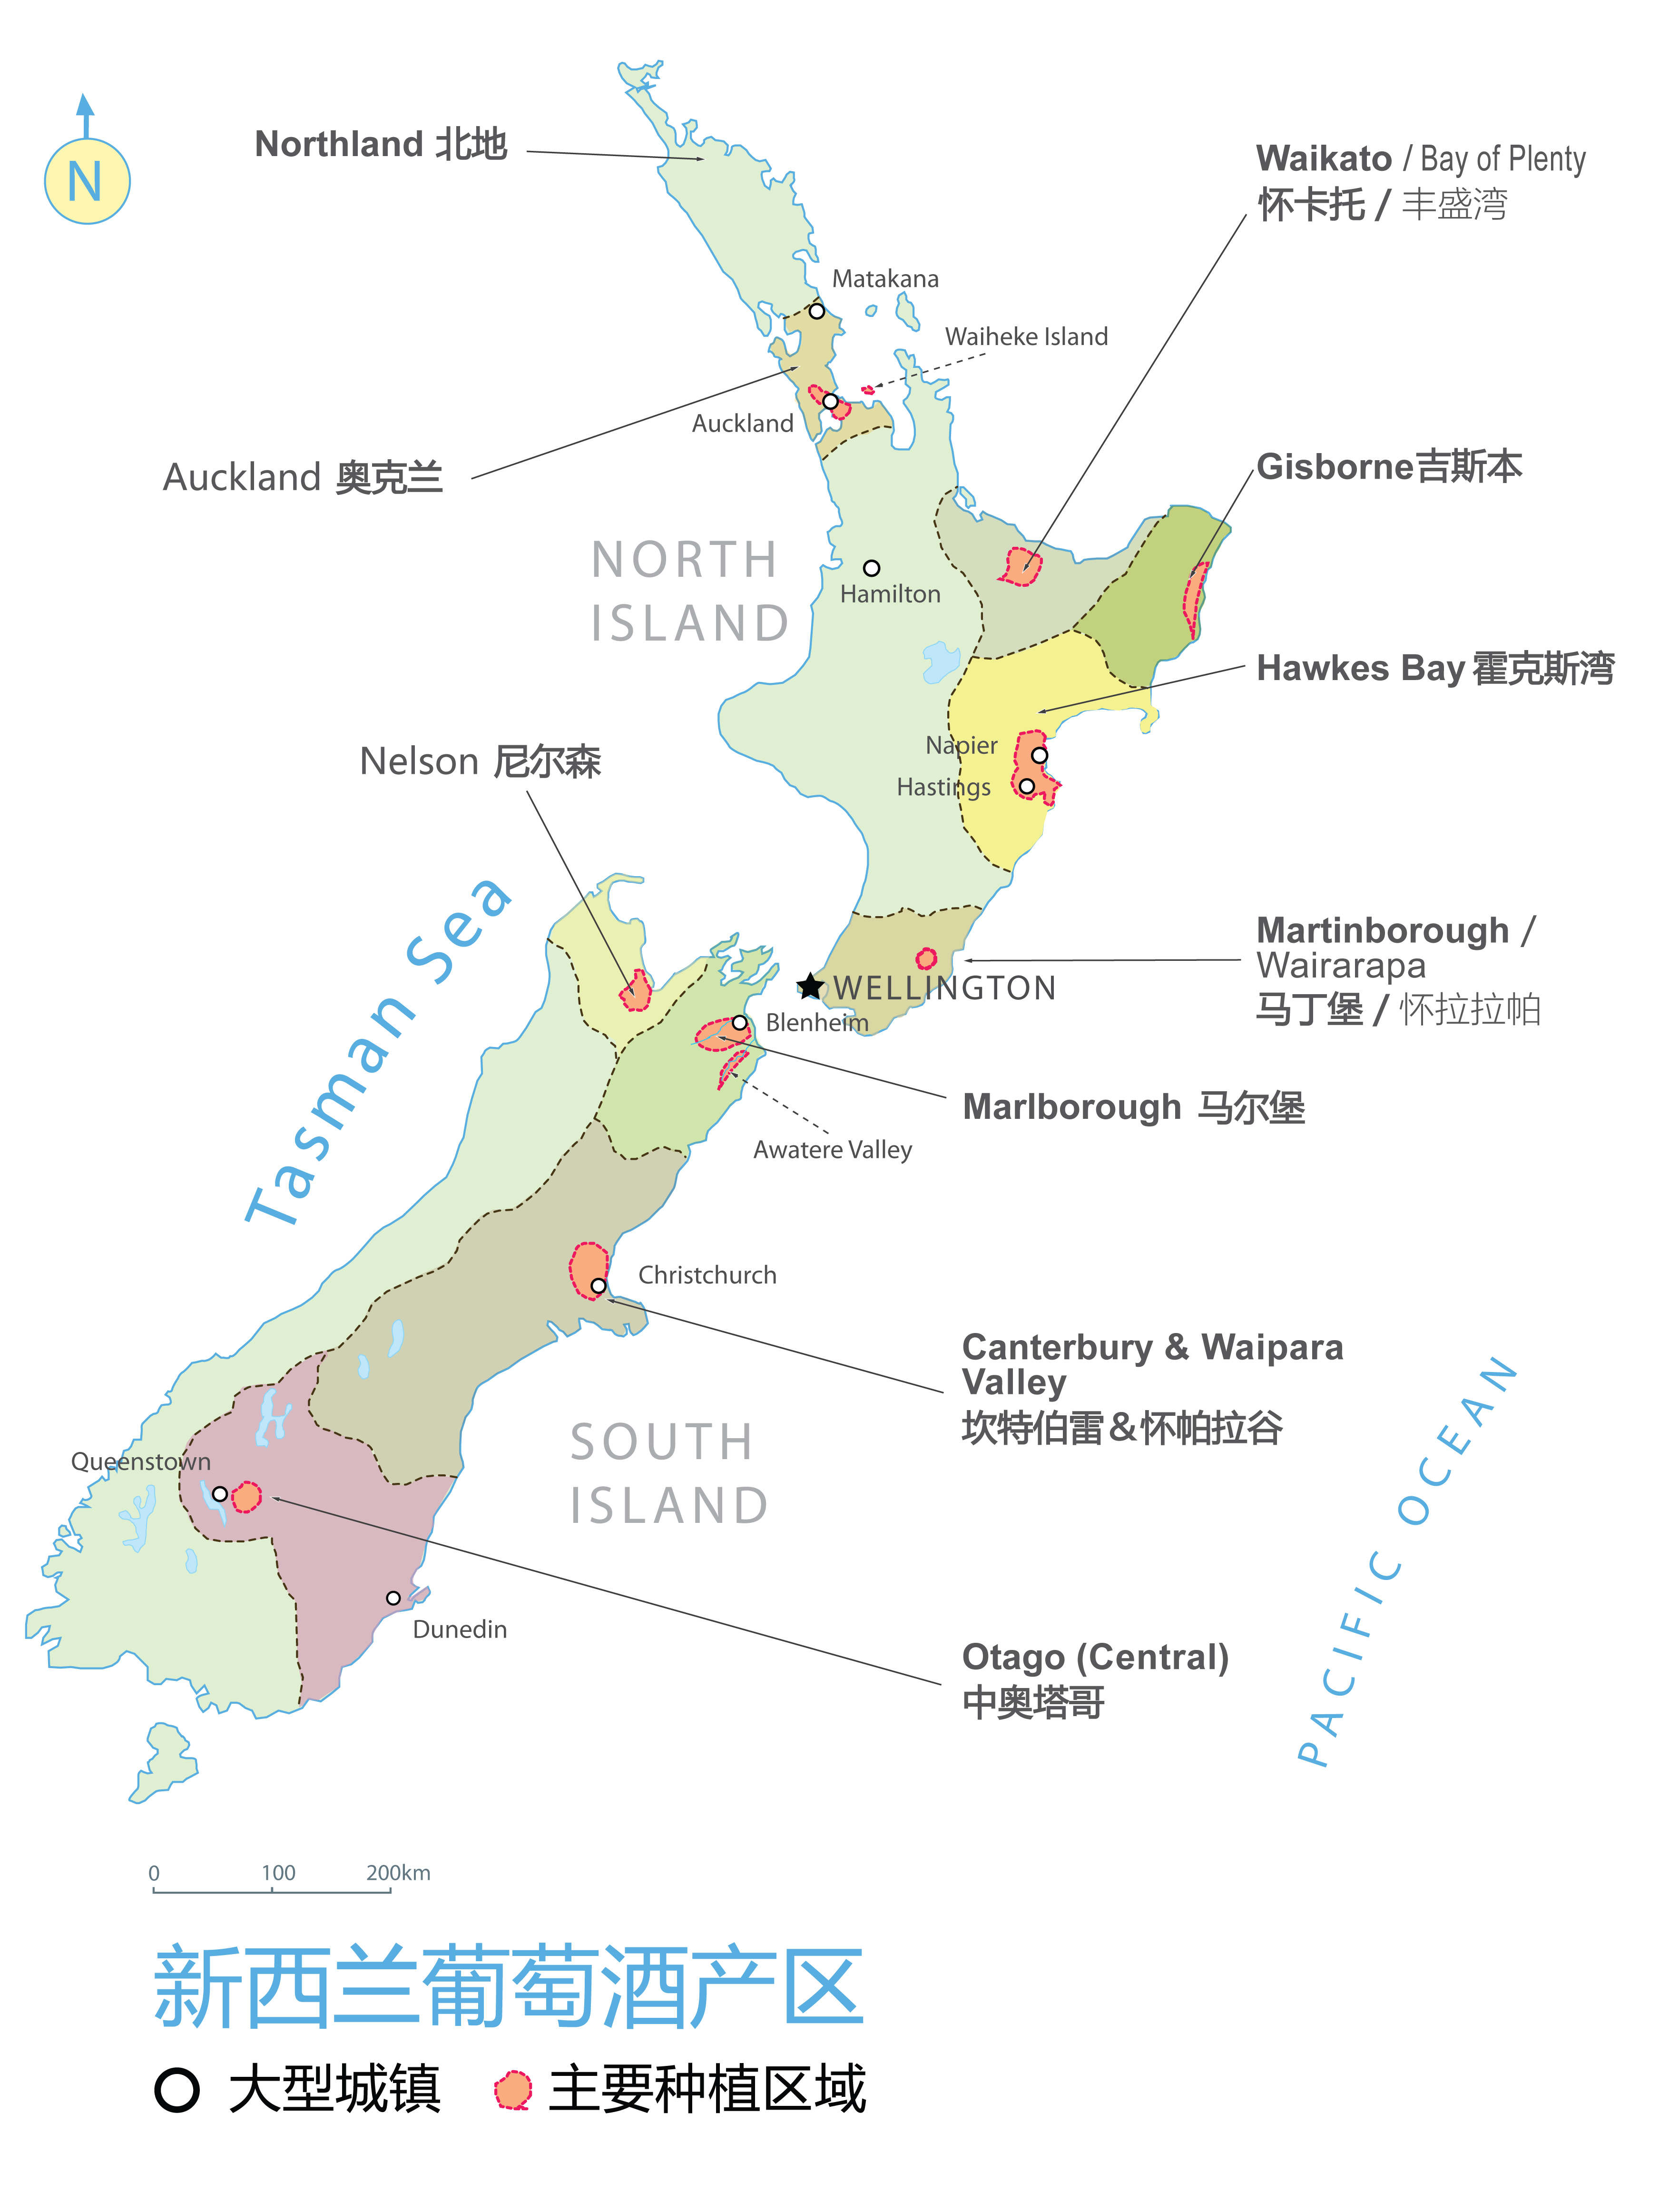 降落新西兰 探索北岛名庄|新西兰| 葡萄酒_凤凰酒业